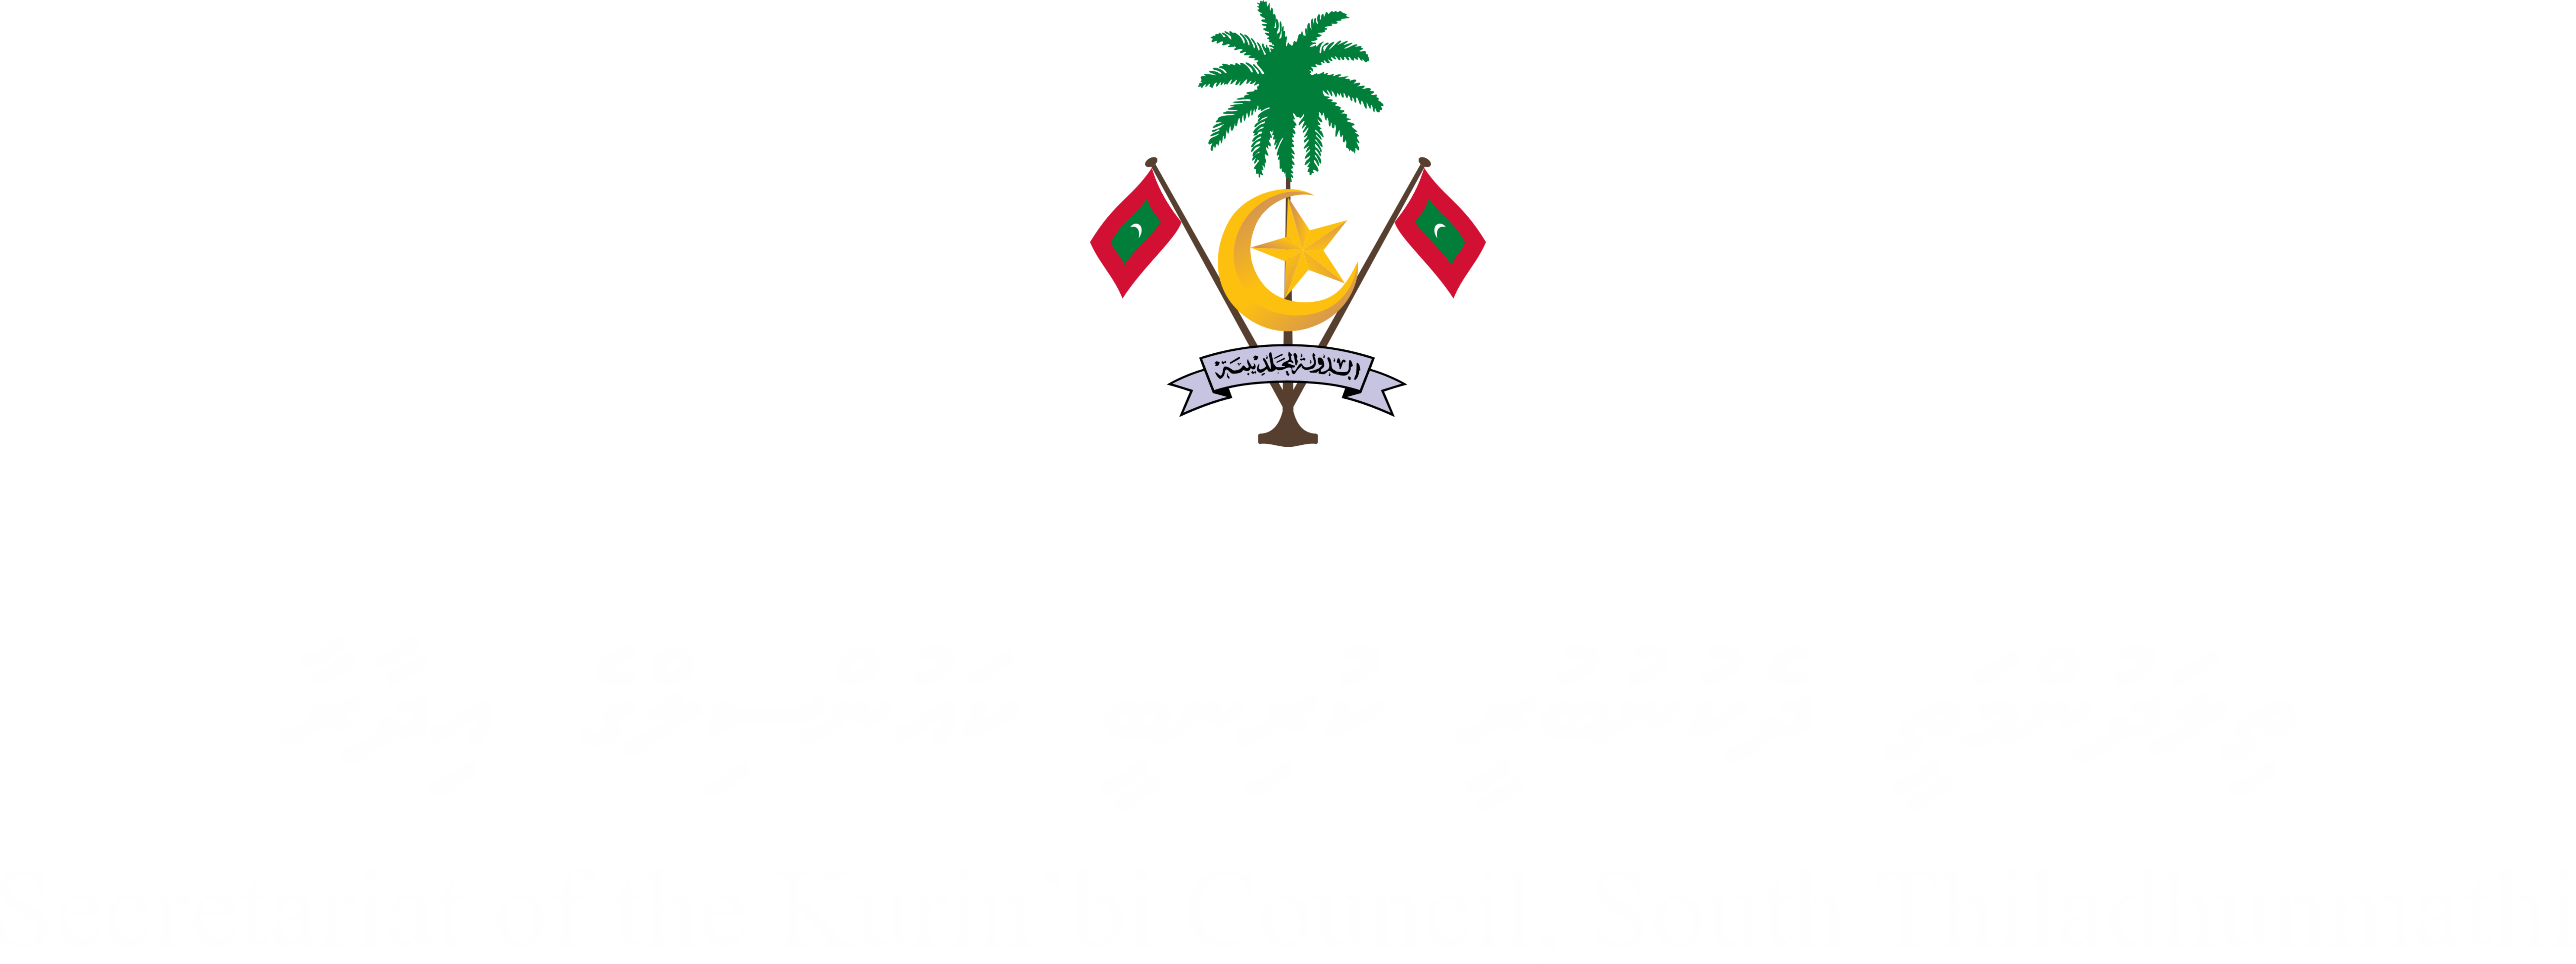 Kurinbee Council